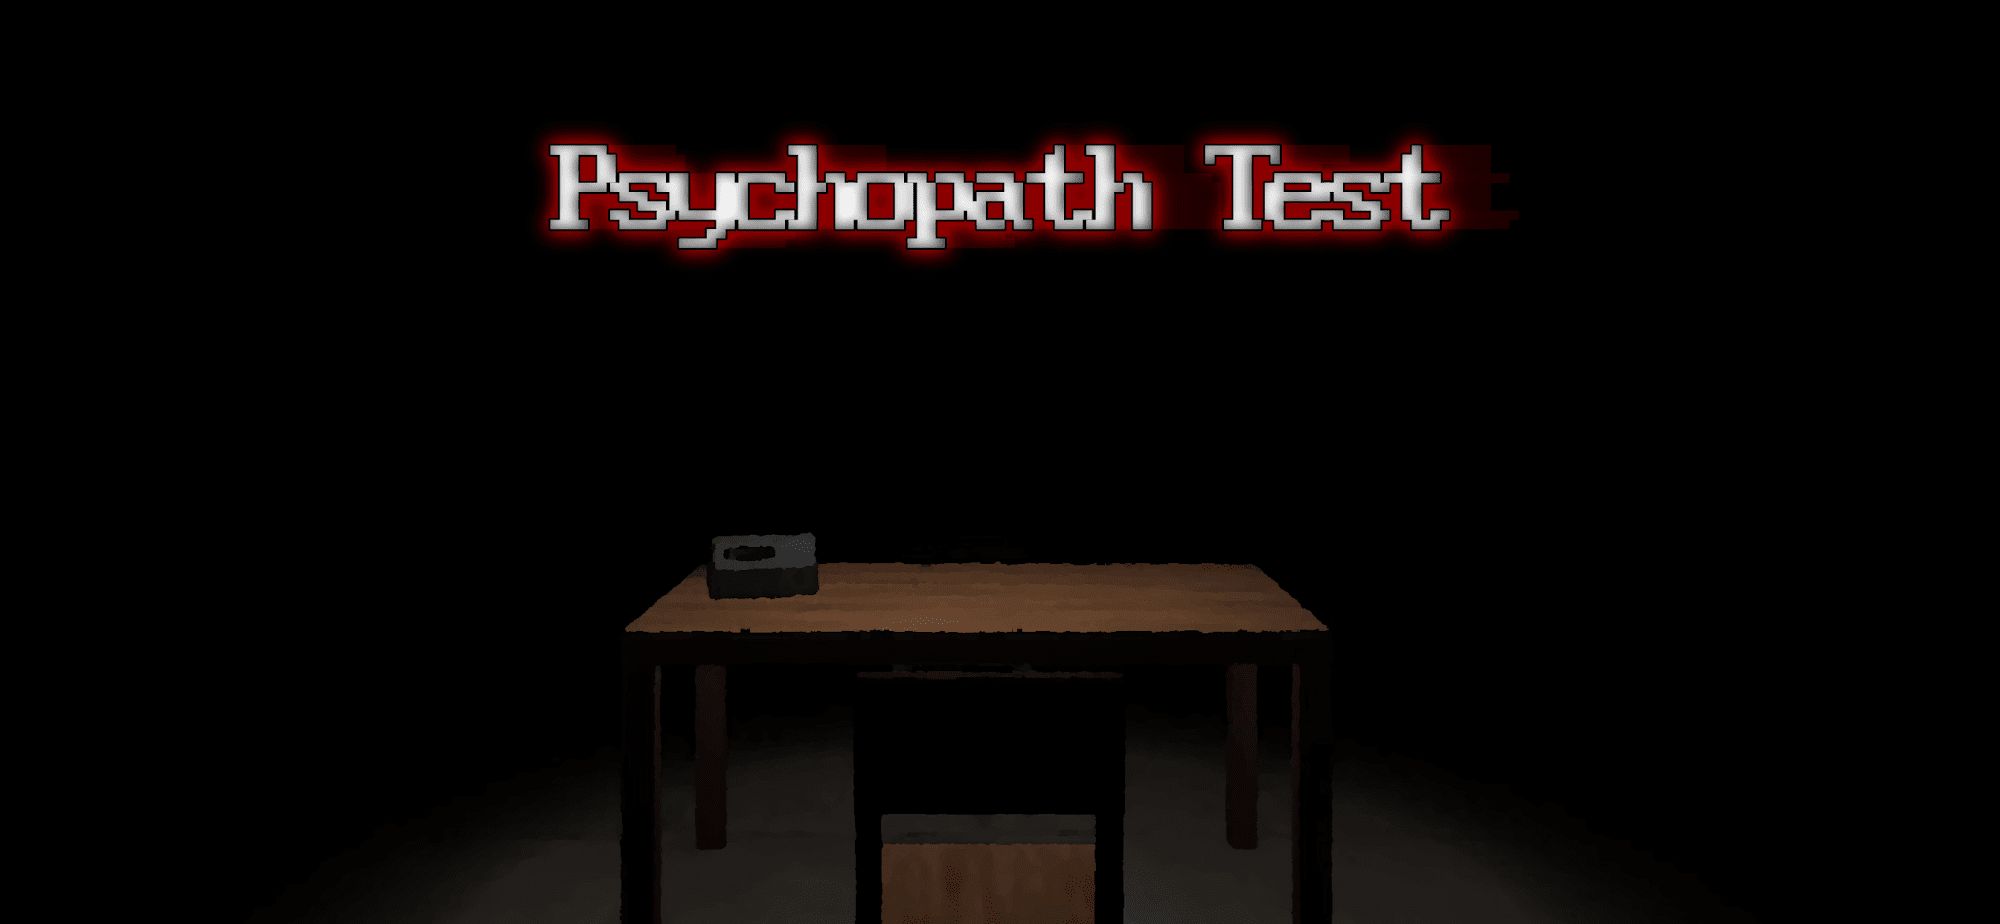 Télécharger Psychopath Test pour Android gratuit.